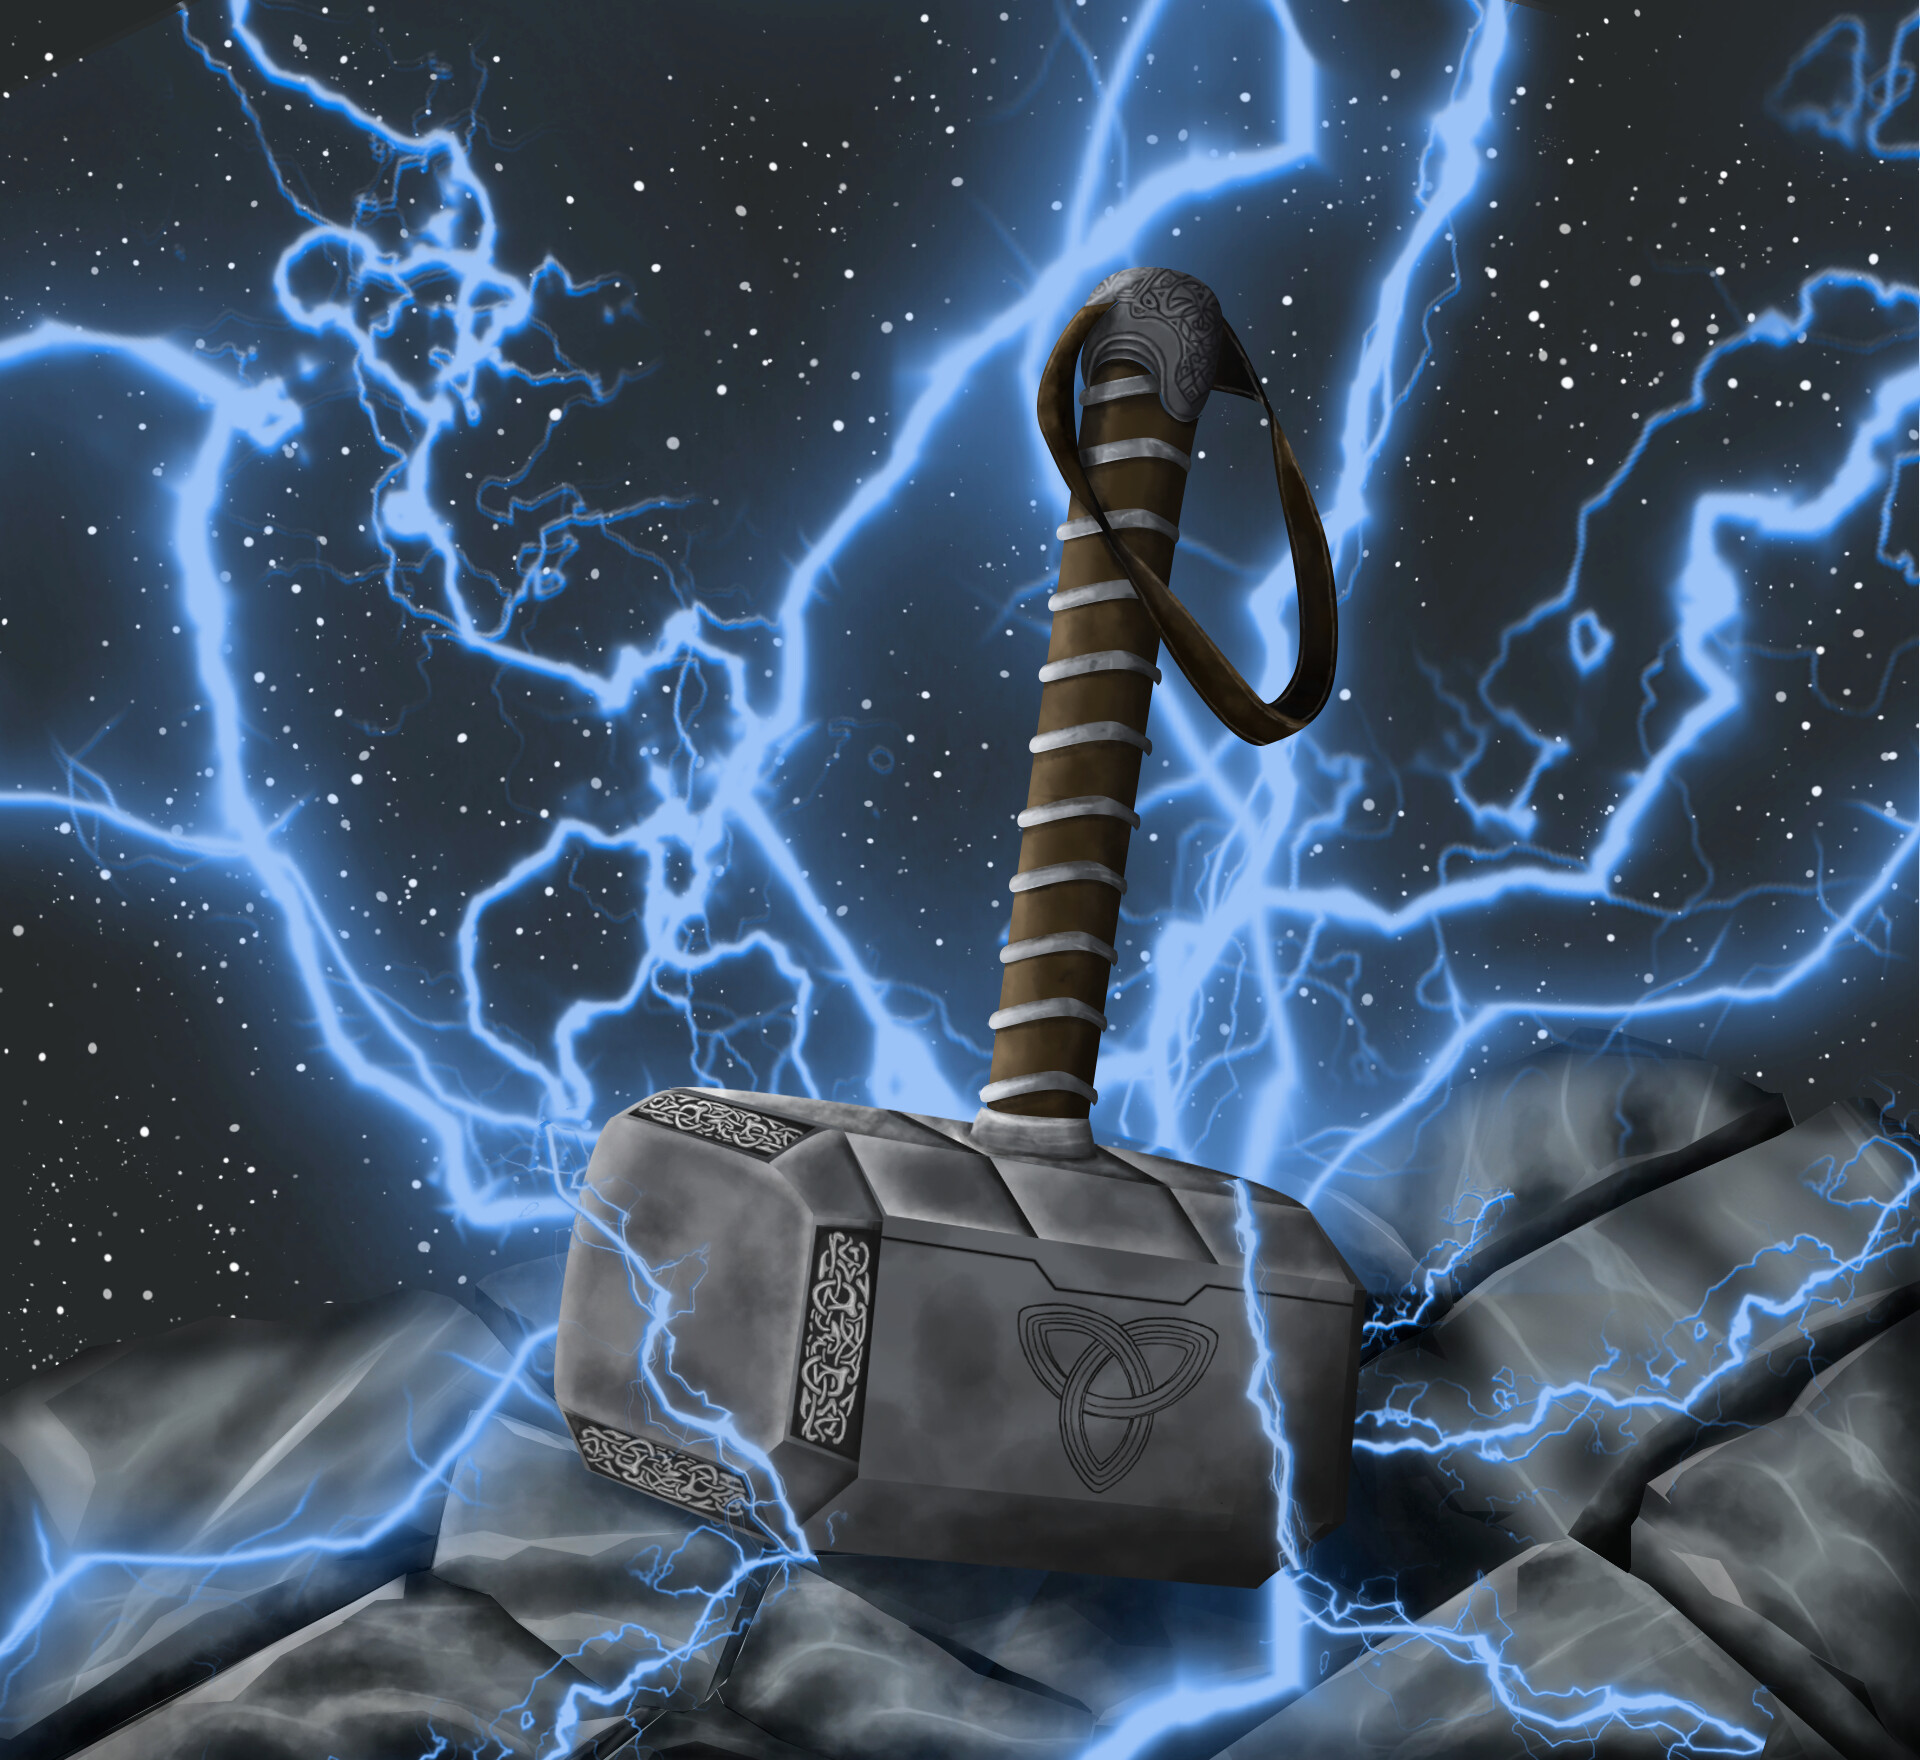 ArtStation - Thor's hammer